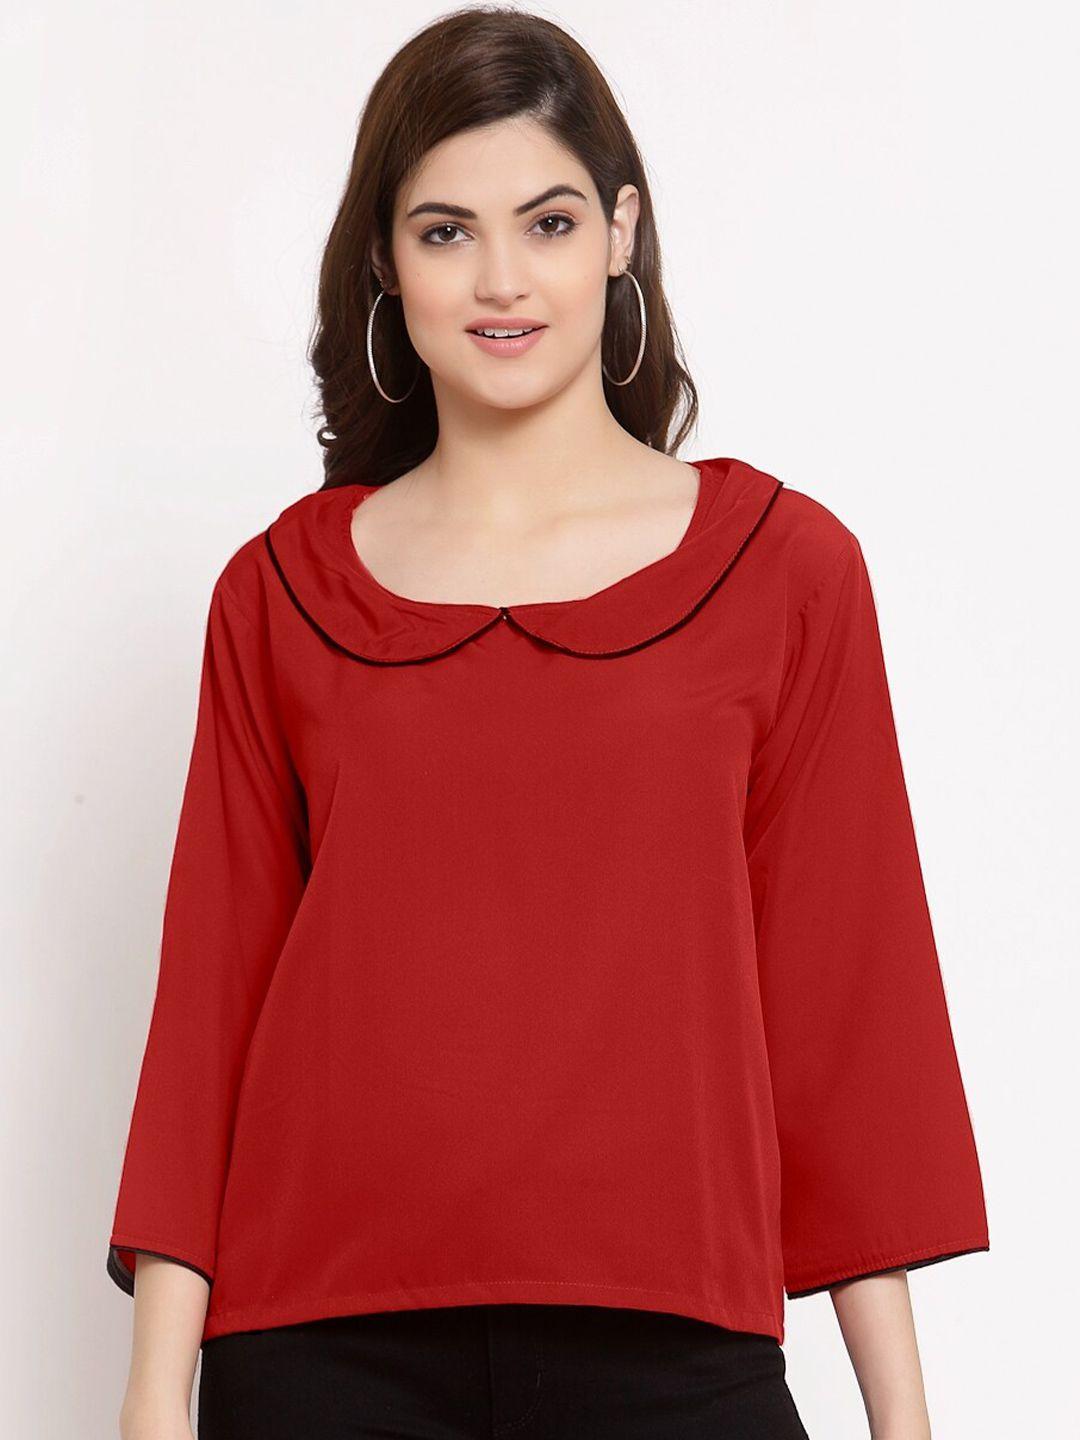 patrorna-women-maroon-solid-peter-pan-collar-long-sleeves-top